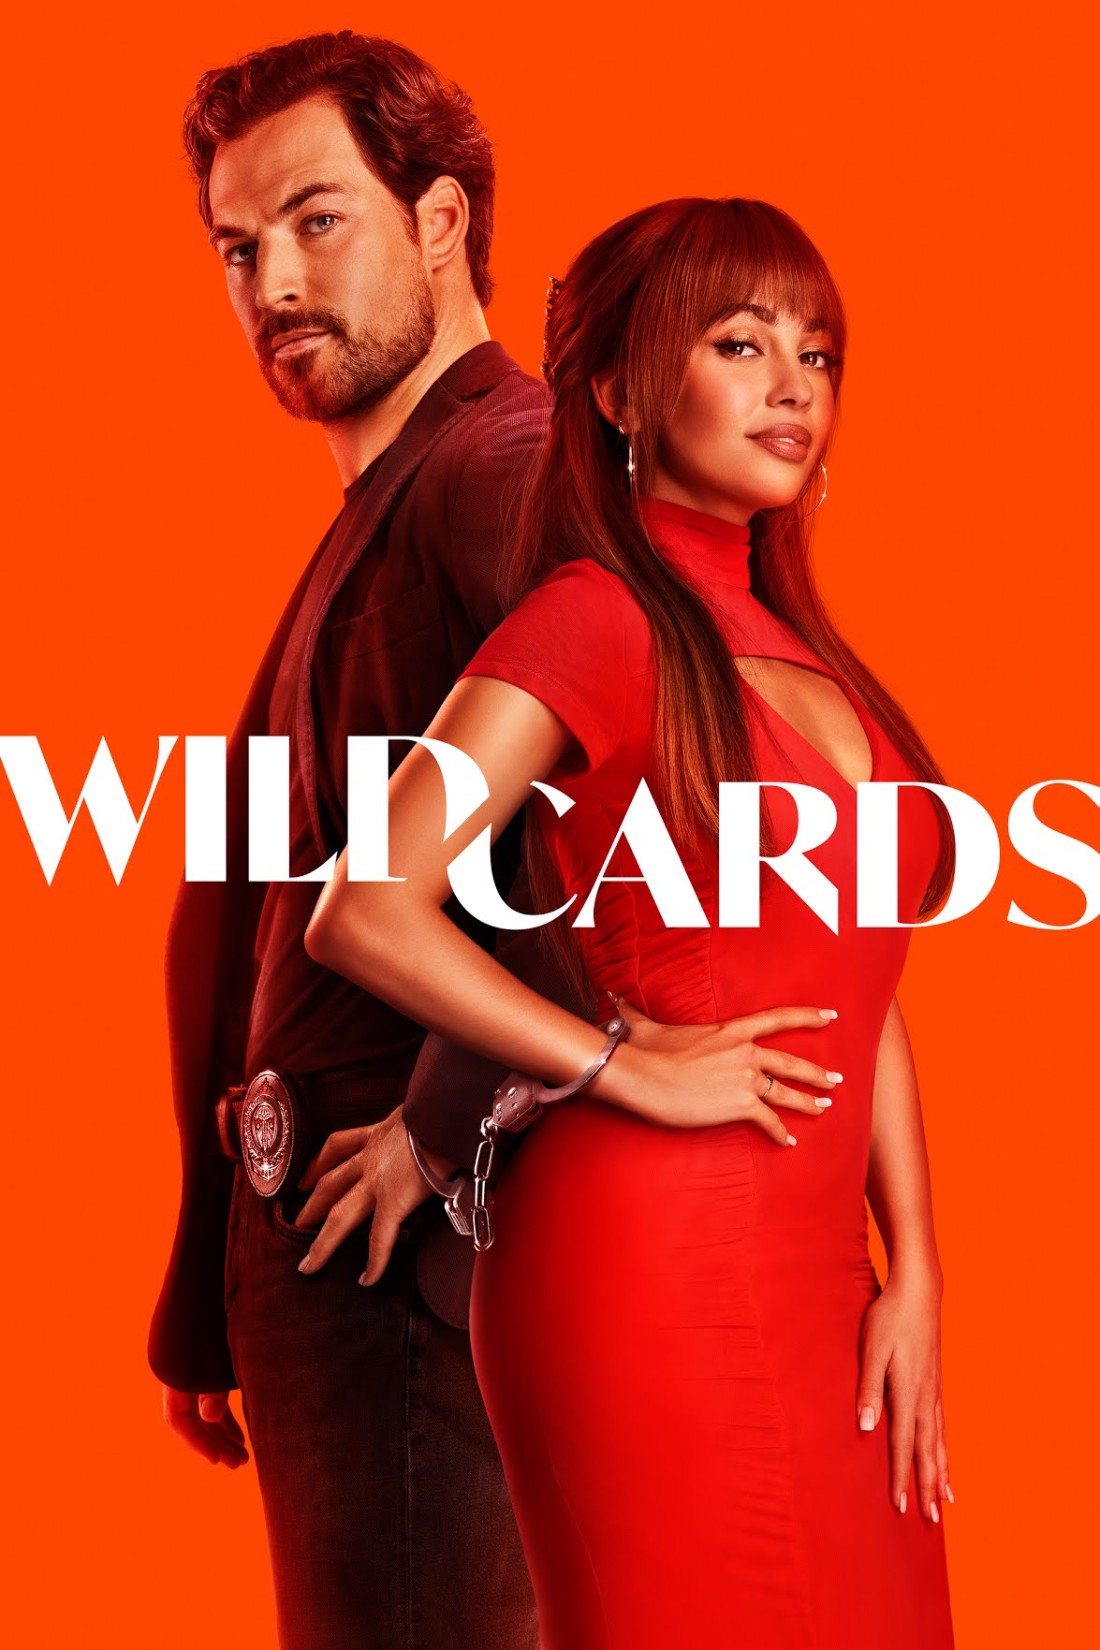 Wild Cards S01E02 [720p] (x265) [6 CH] 6fbb9768872fc15d87785720620dcdcb